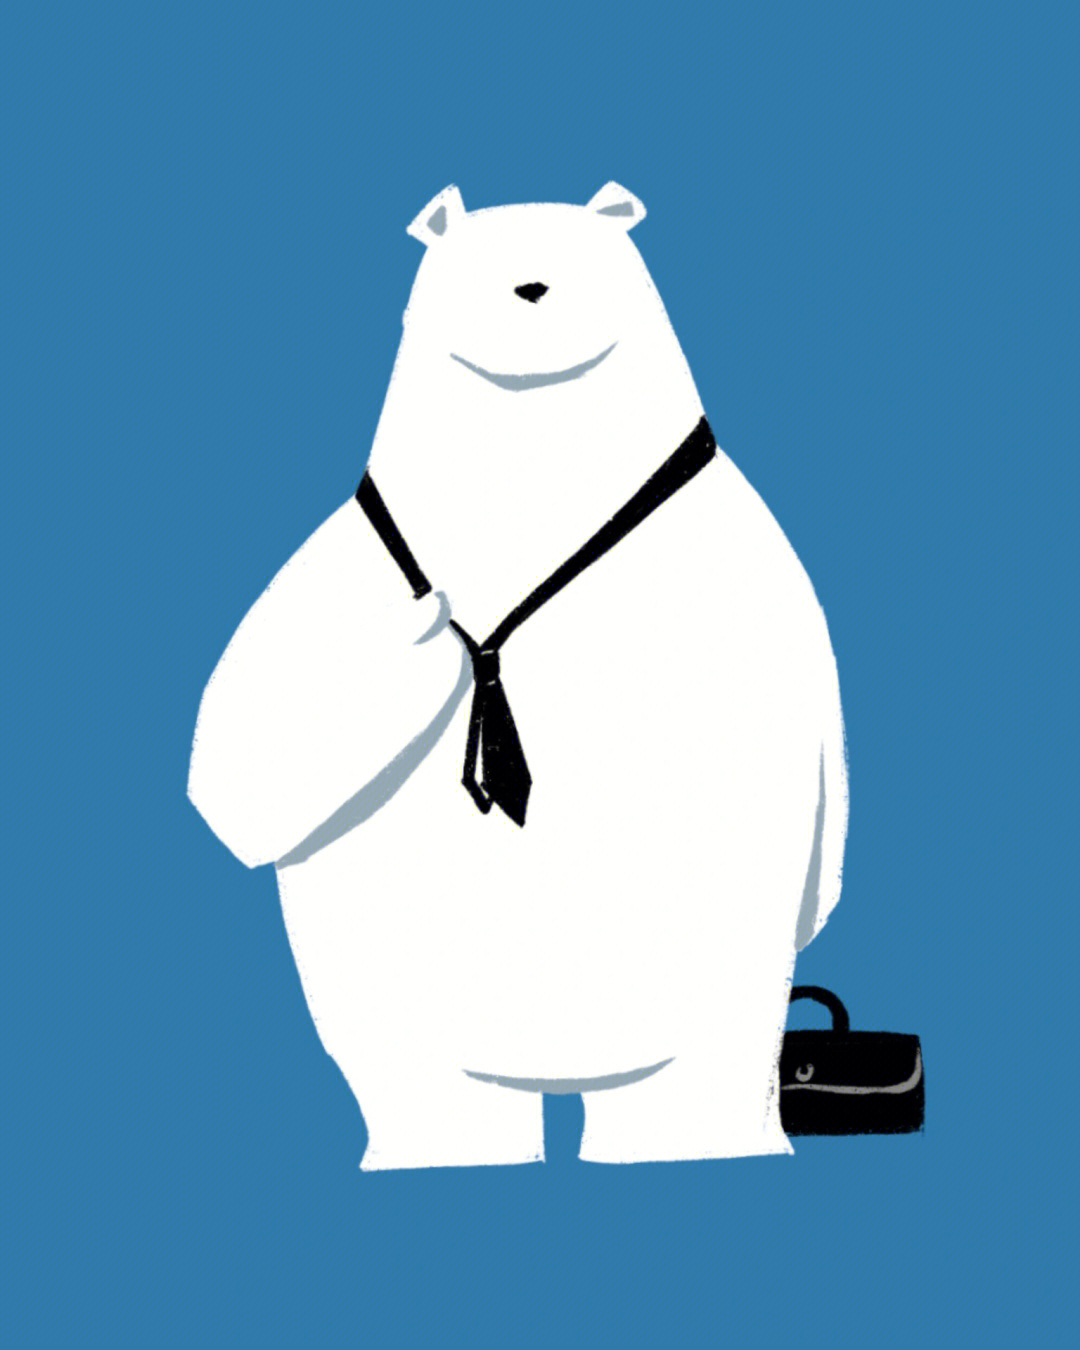 北极熊手机壁纸卡通图片